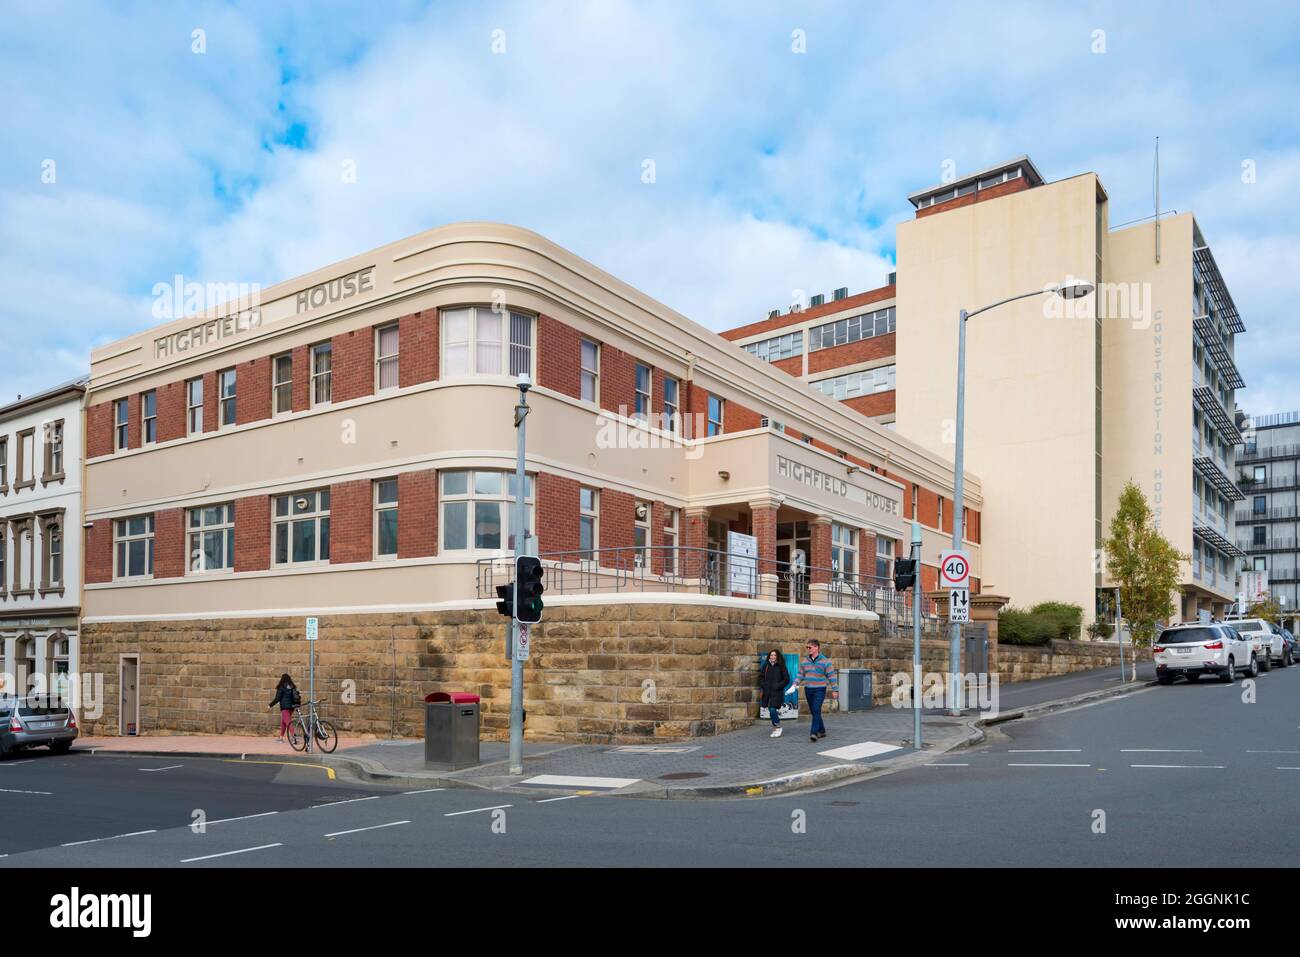 High-Field House à Hobart, Tasmanie, Australie est un bâtiment de style Art déco avec des bandes horizontales entourant le bâtiment d'angle Banque D'Images